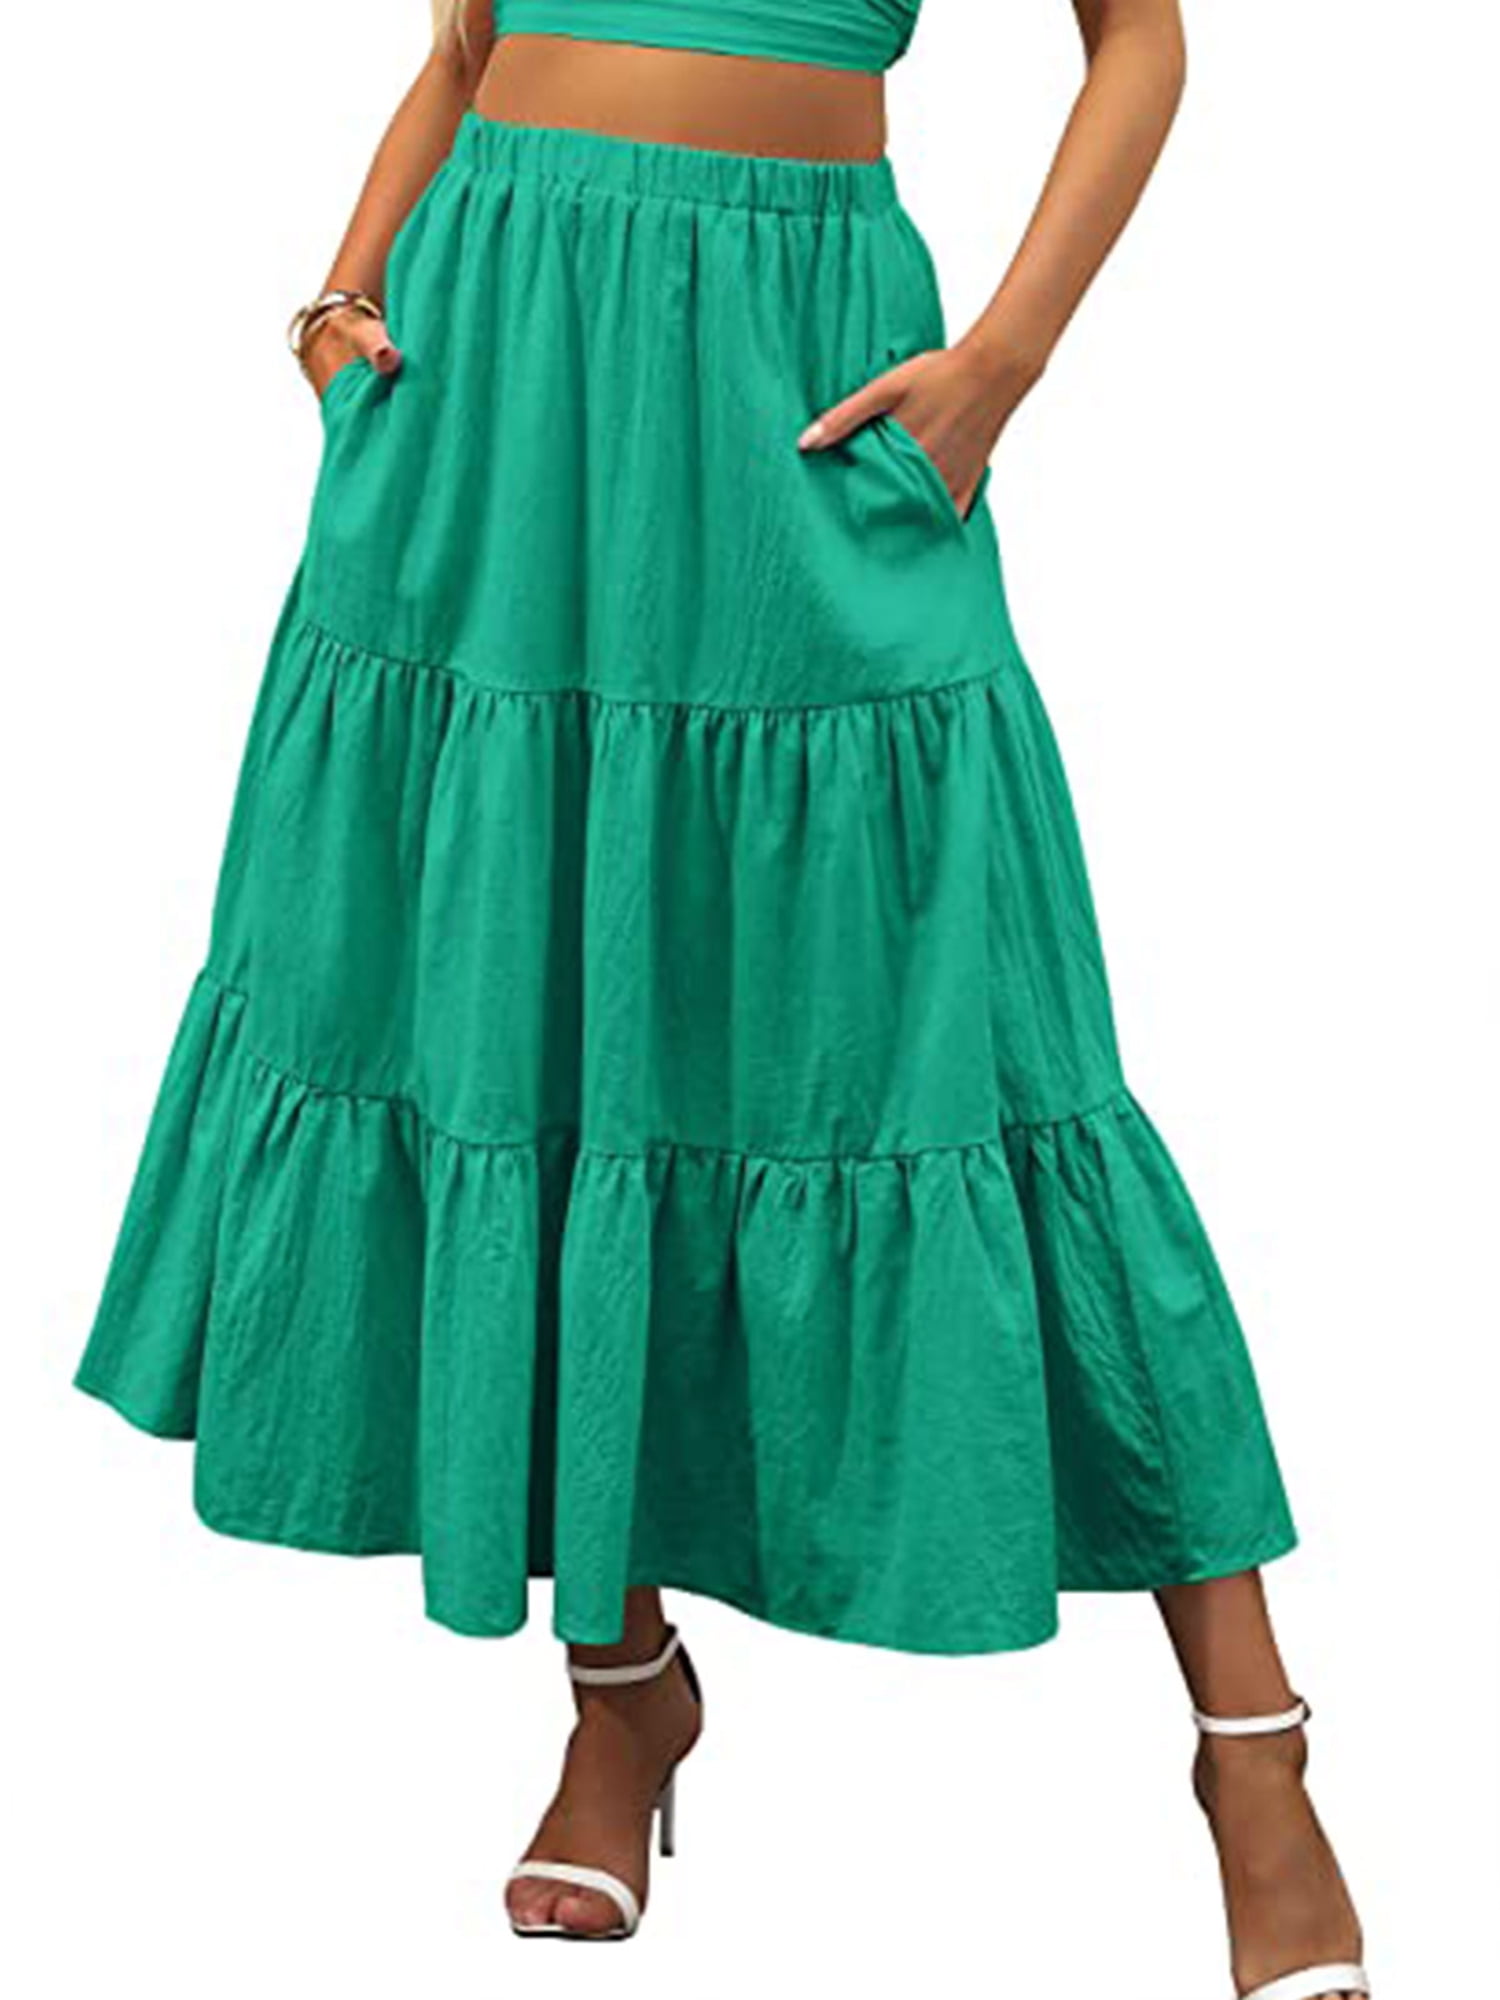 Women Tiered Skirt Ruffle Maxi Skirt High Waist Elegant Bohemian Skirt  Vintage Beach Long Hippie Skirt for Girls Black, Small - Walmart.com